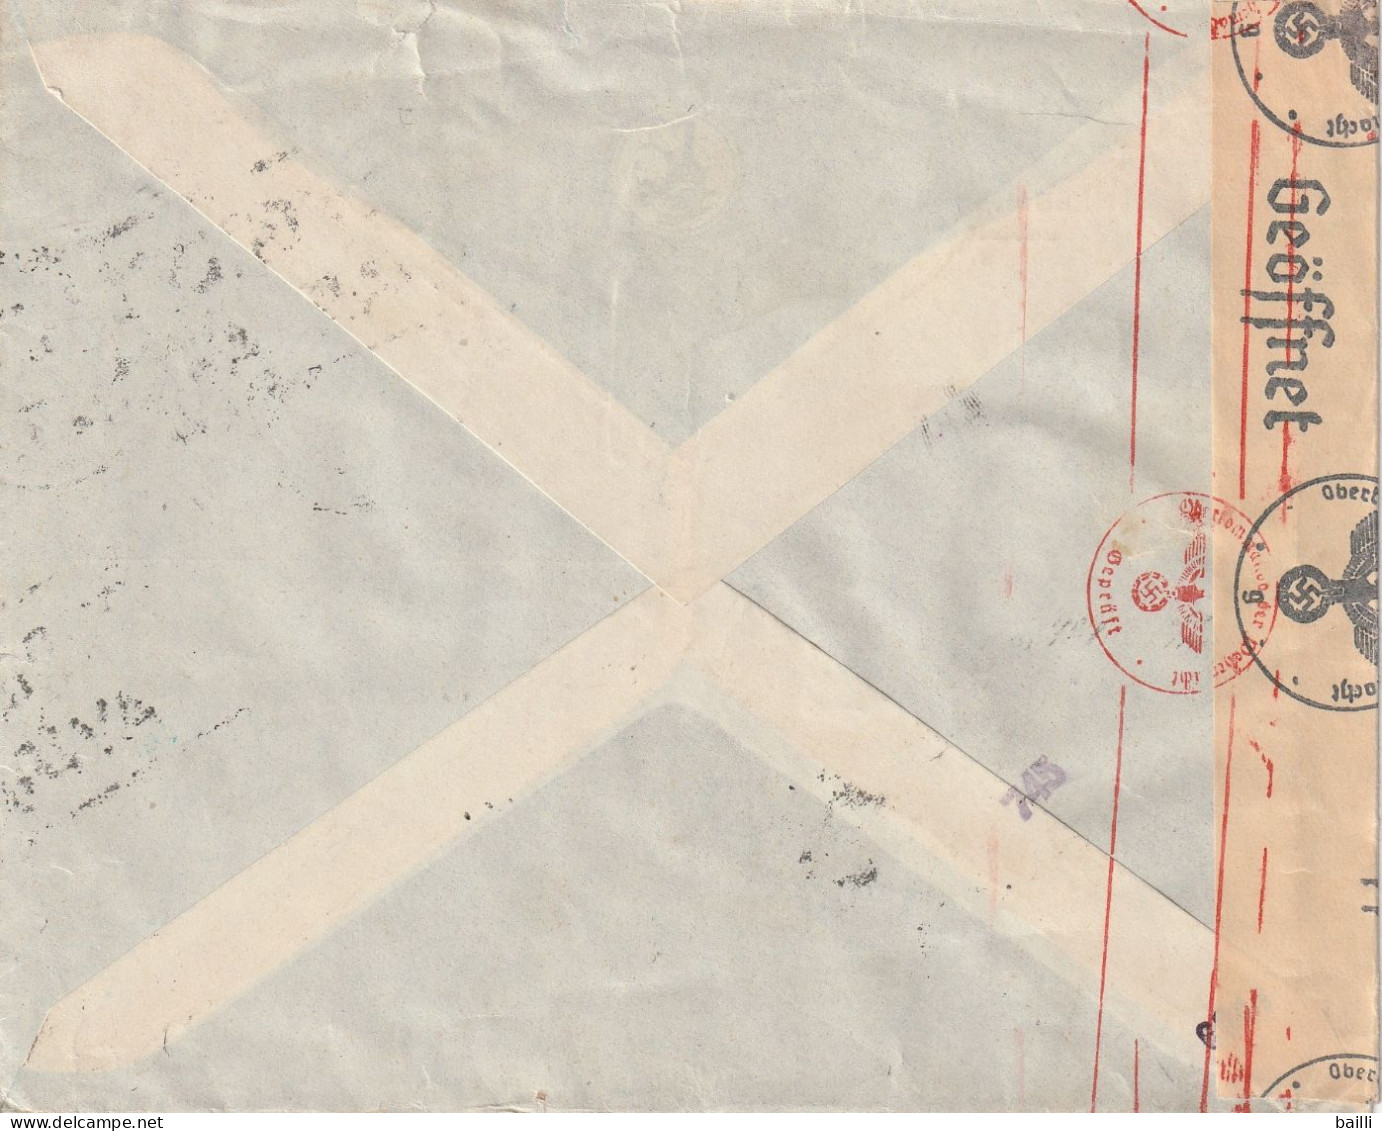 Grèce Lettre Censurée Par Avion Pour L'Allemagne 1942 - Lettres & Documents